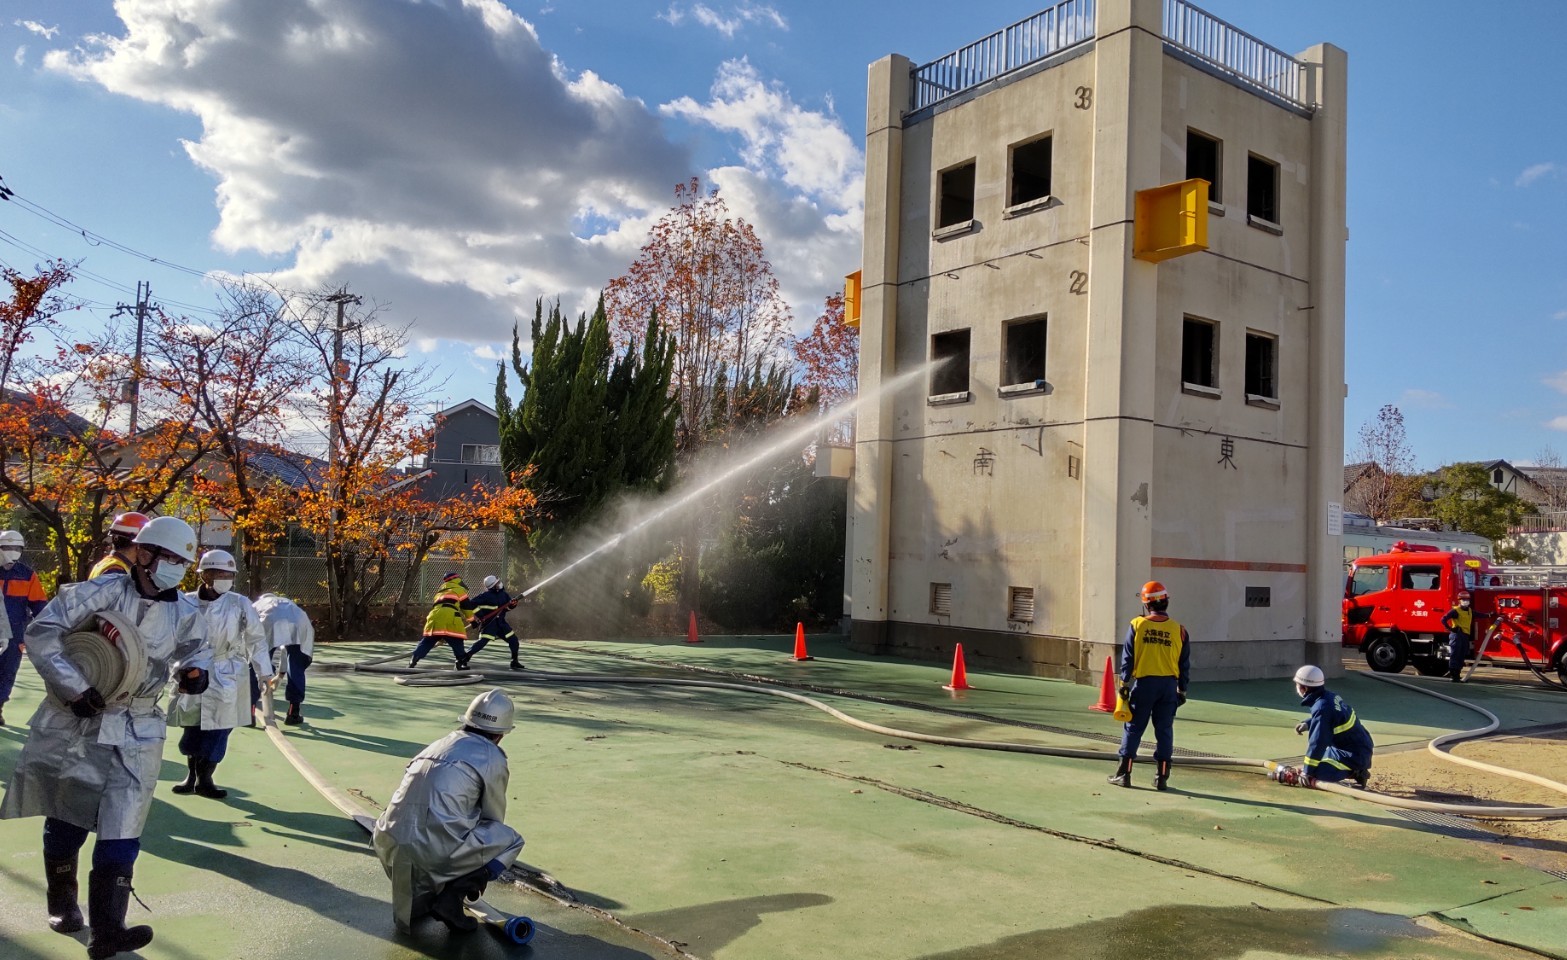 令和3年度 消防団員教育訓練・幹部科初級指導課程が実施されました。